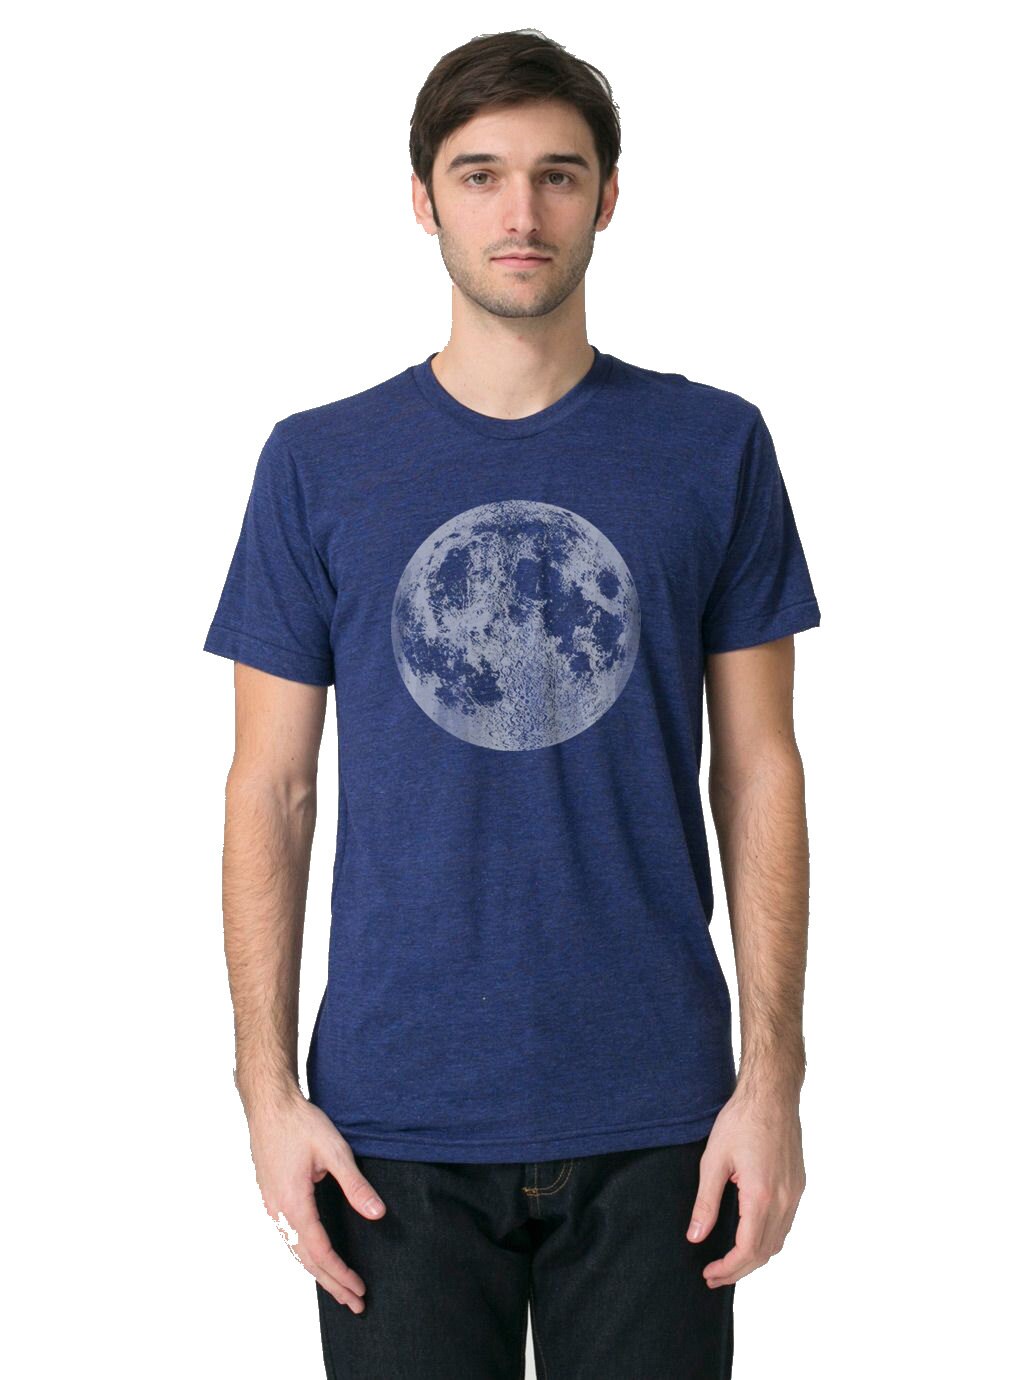 Mens Full Moon Shirt Blue Full Moon t Shirt Mens Moon tee